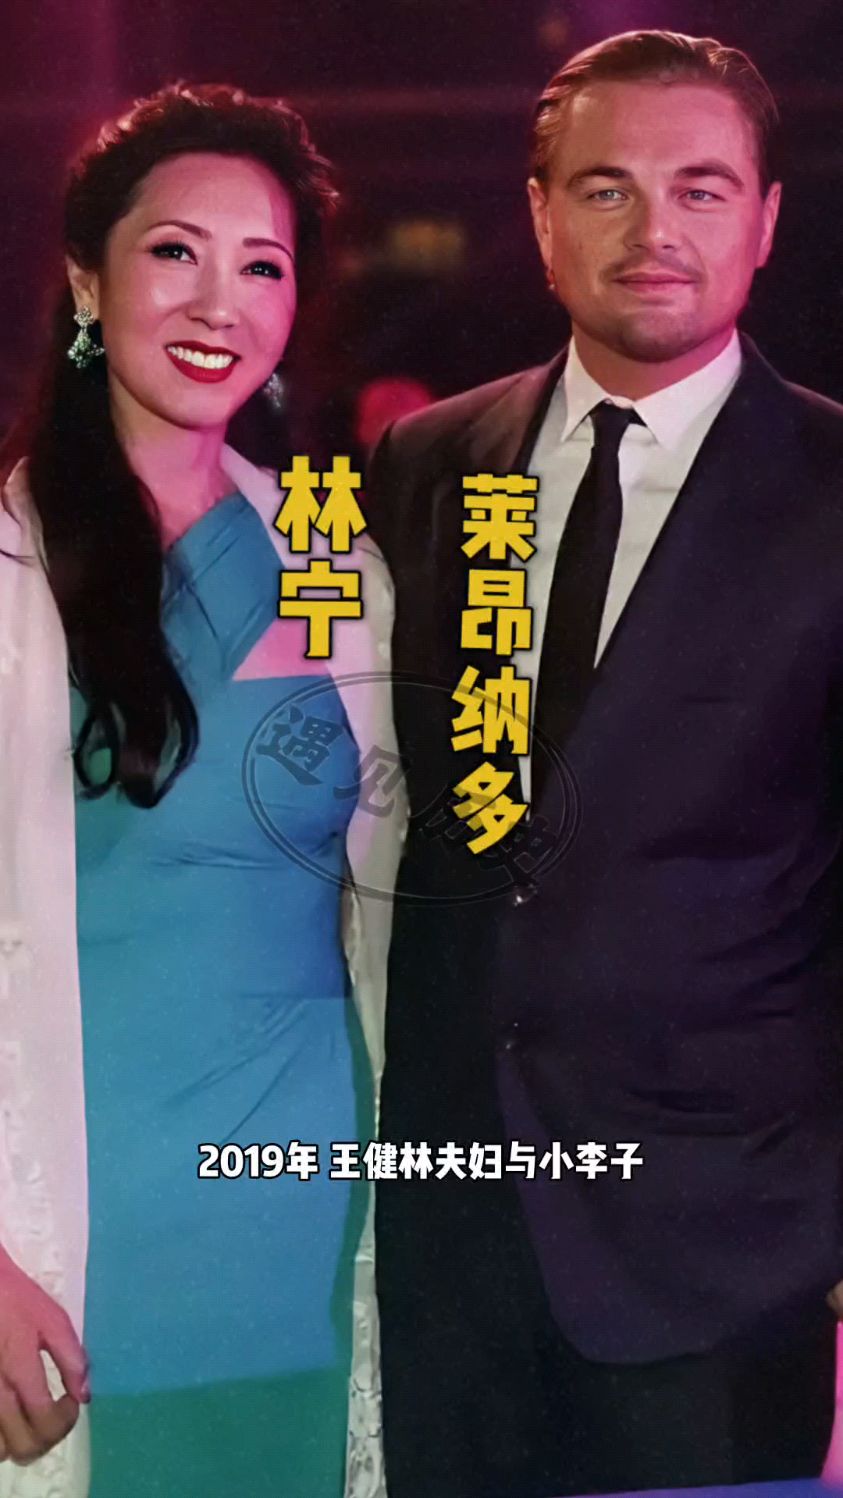 2019年某次晚宴后王健林夫妇与小李子莱昂纳多合影